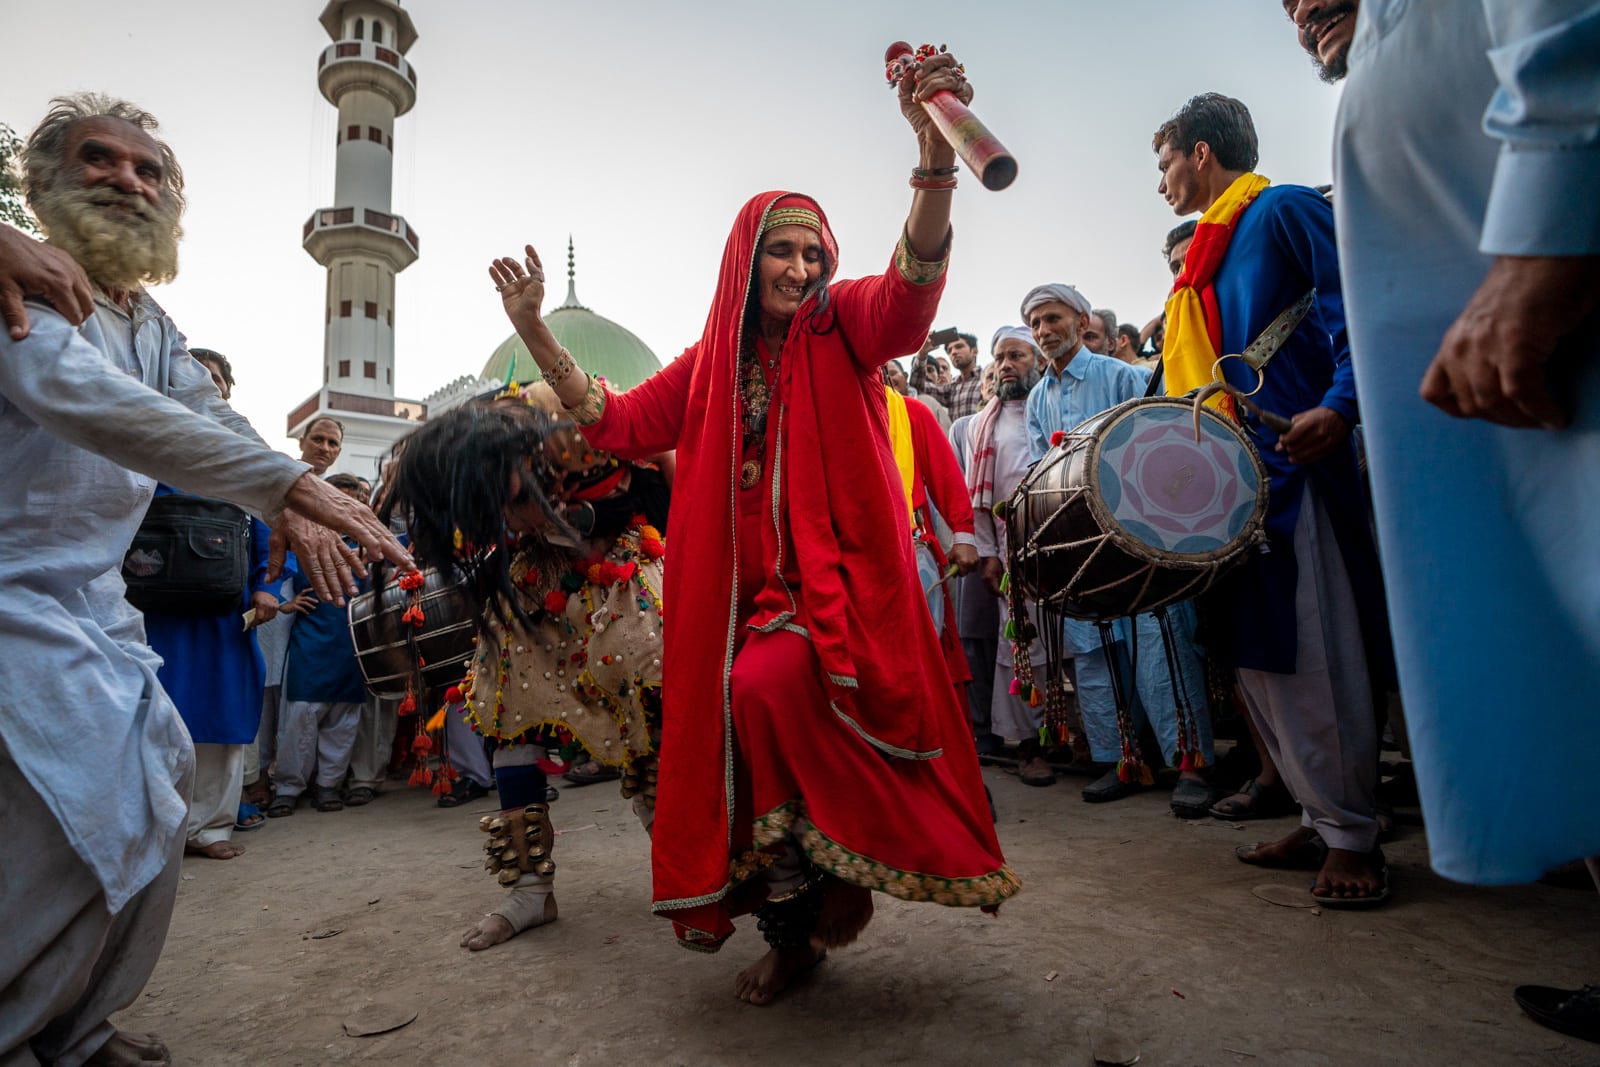 Female malang dancing in Lahore, Pakistan